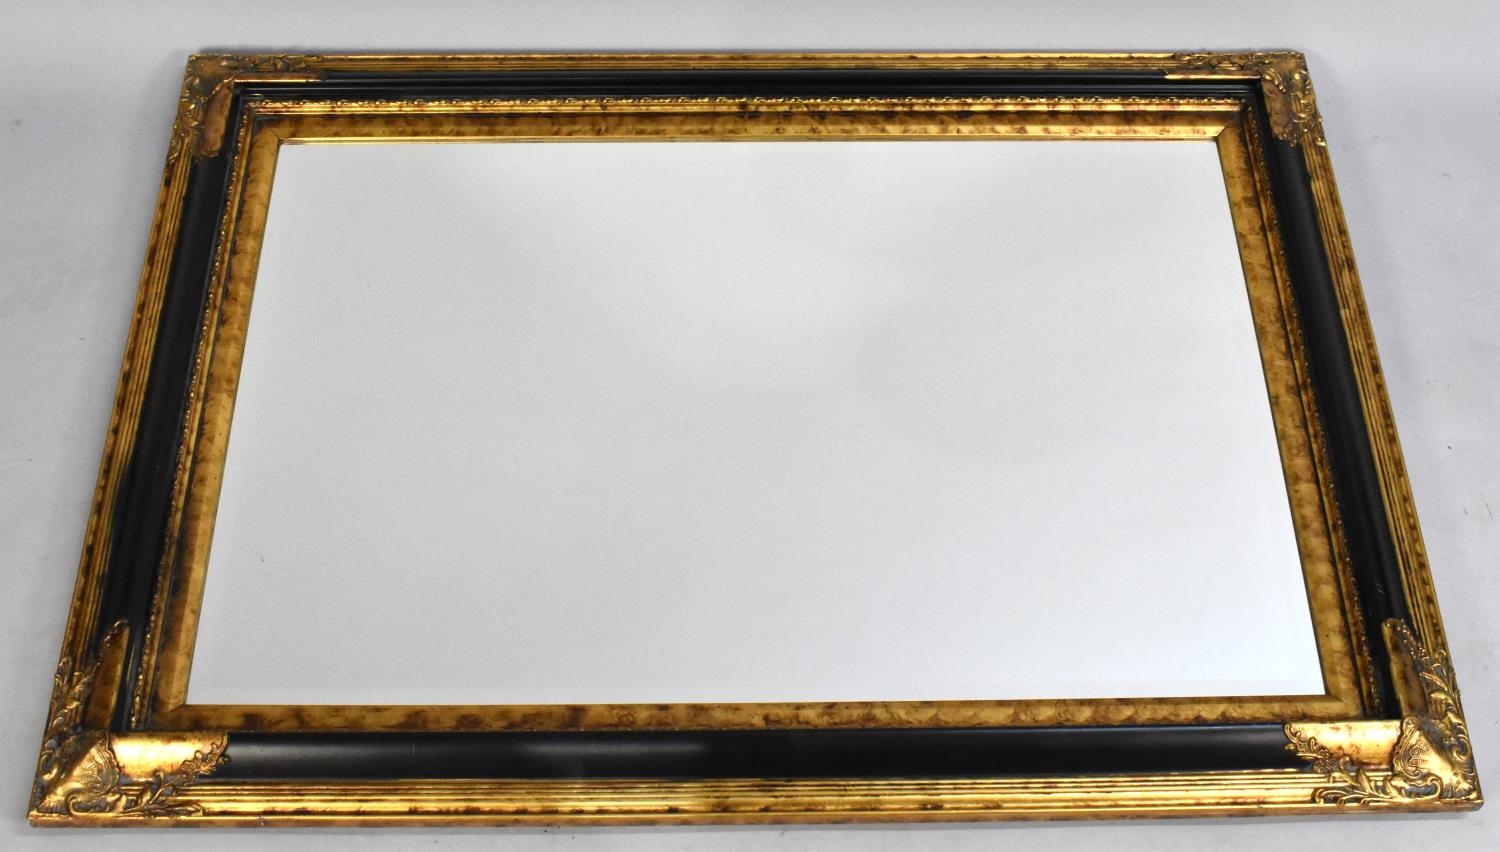 A Modern Gilt Framed Rectangular Wall Mirror, 110x80cms